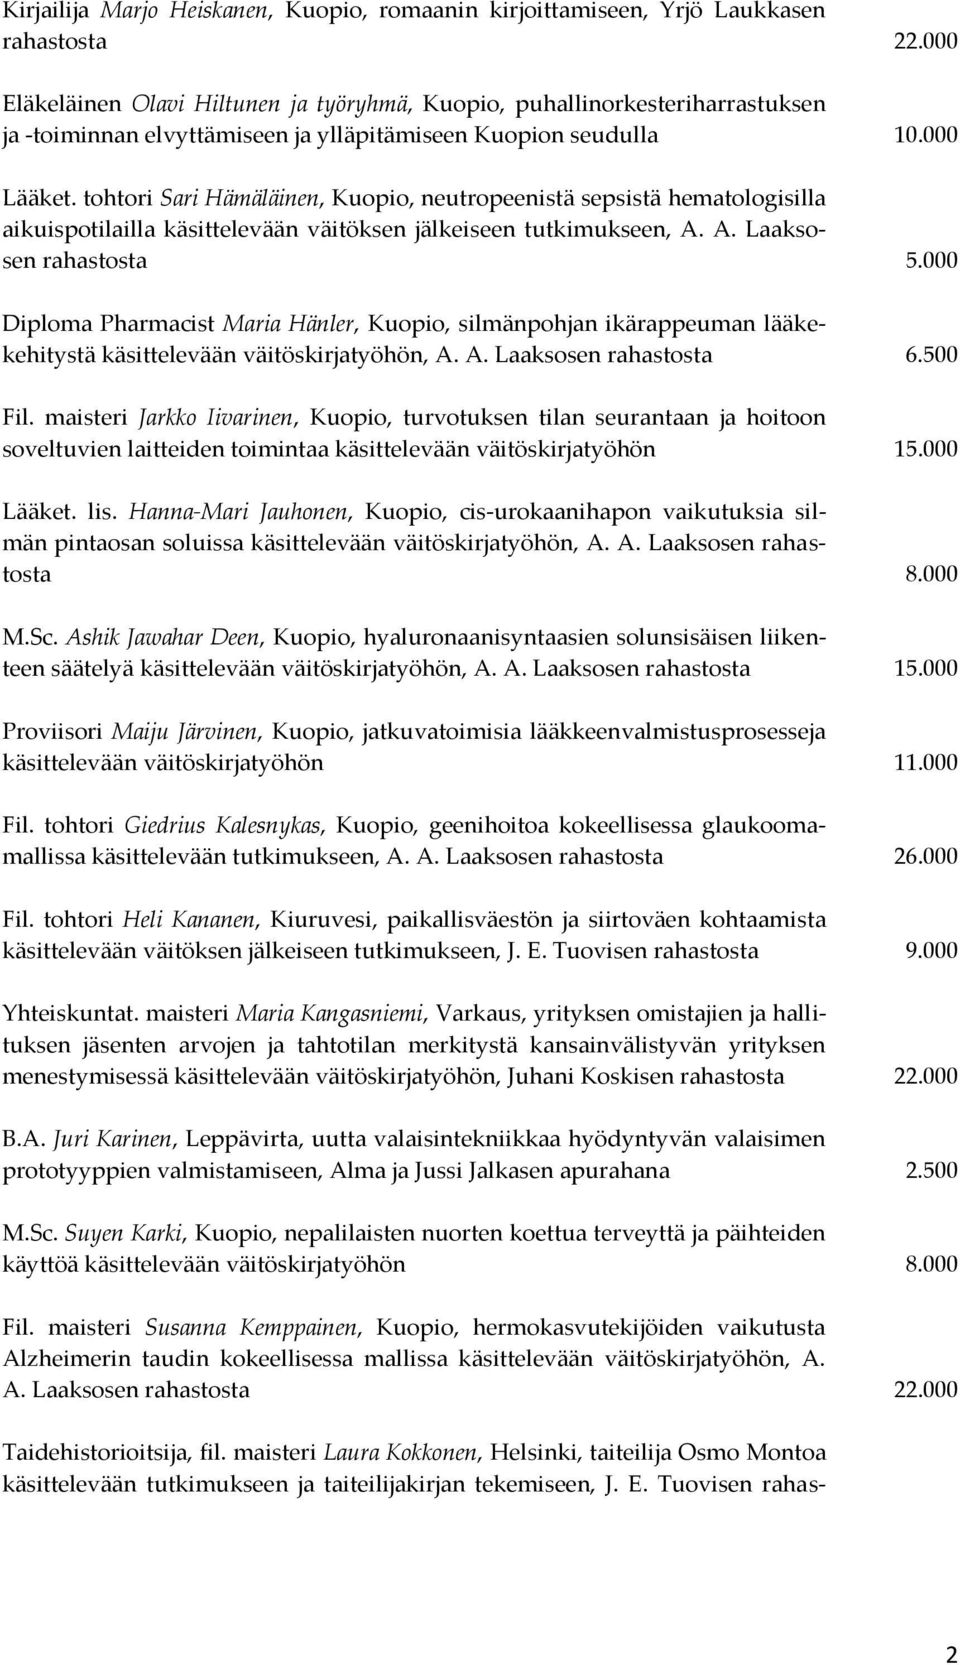 tohtori Sari Hämäläinen, Kuopio, neutropeenistä sepsistä hematologisilla aikuispotilailla käsittelevään väitöksen jälkeiseen tutkimukseen, A. A. Laaksosen rahastosta 5.